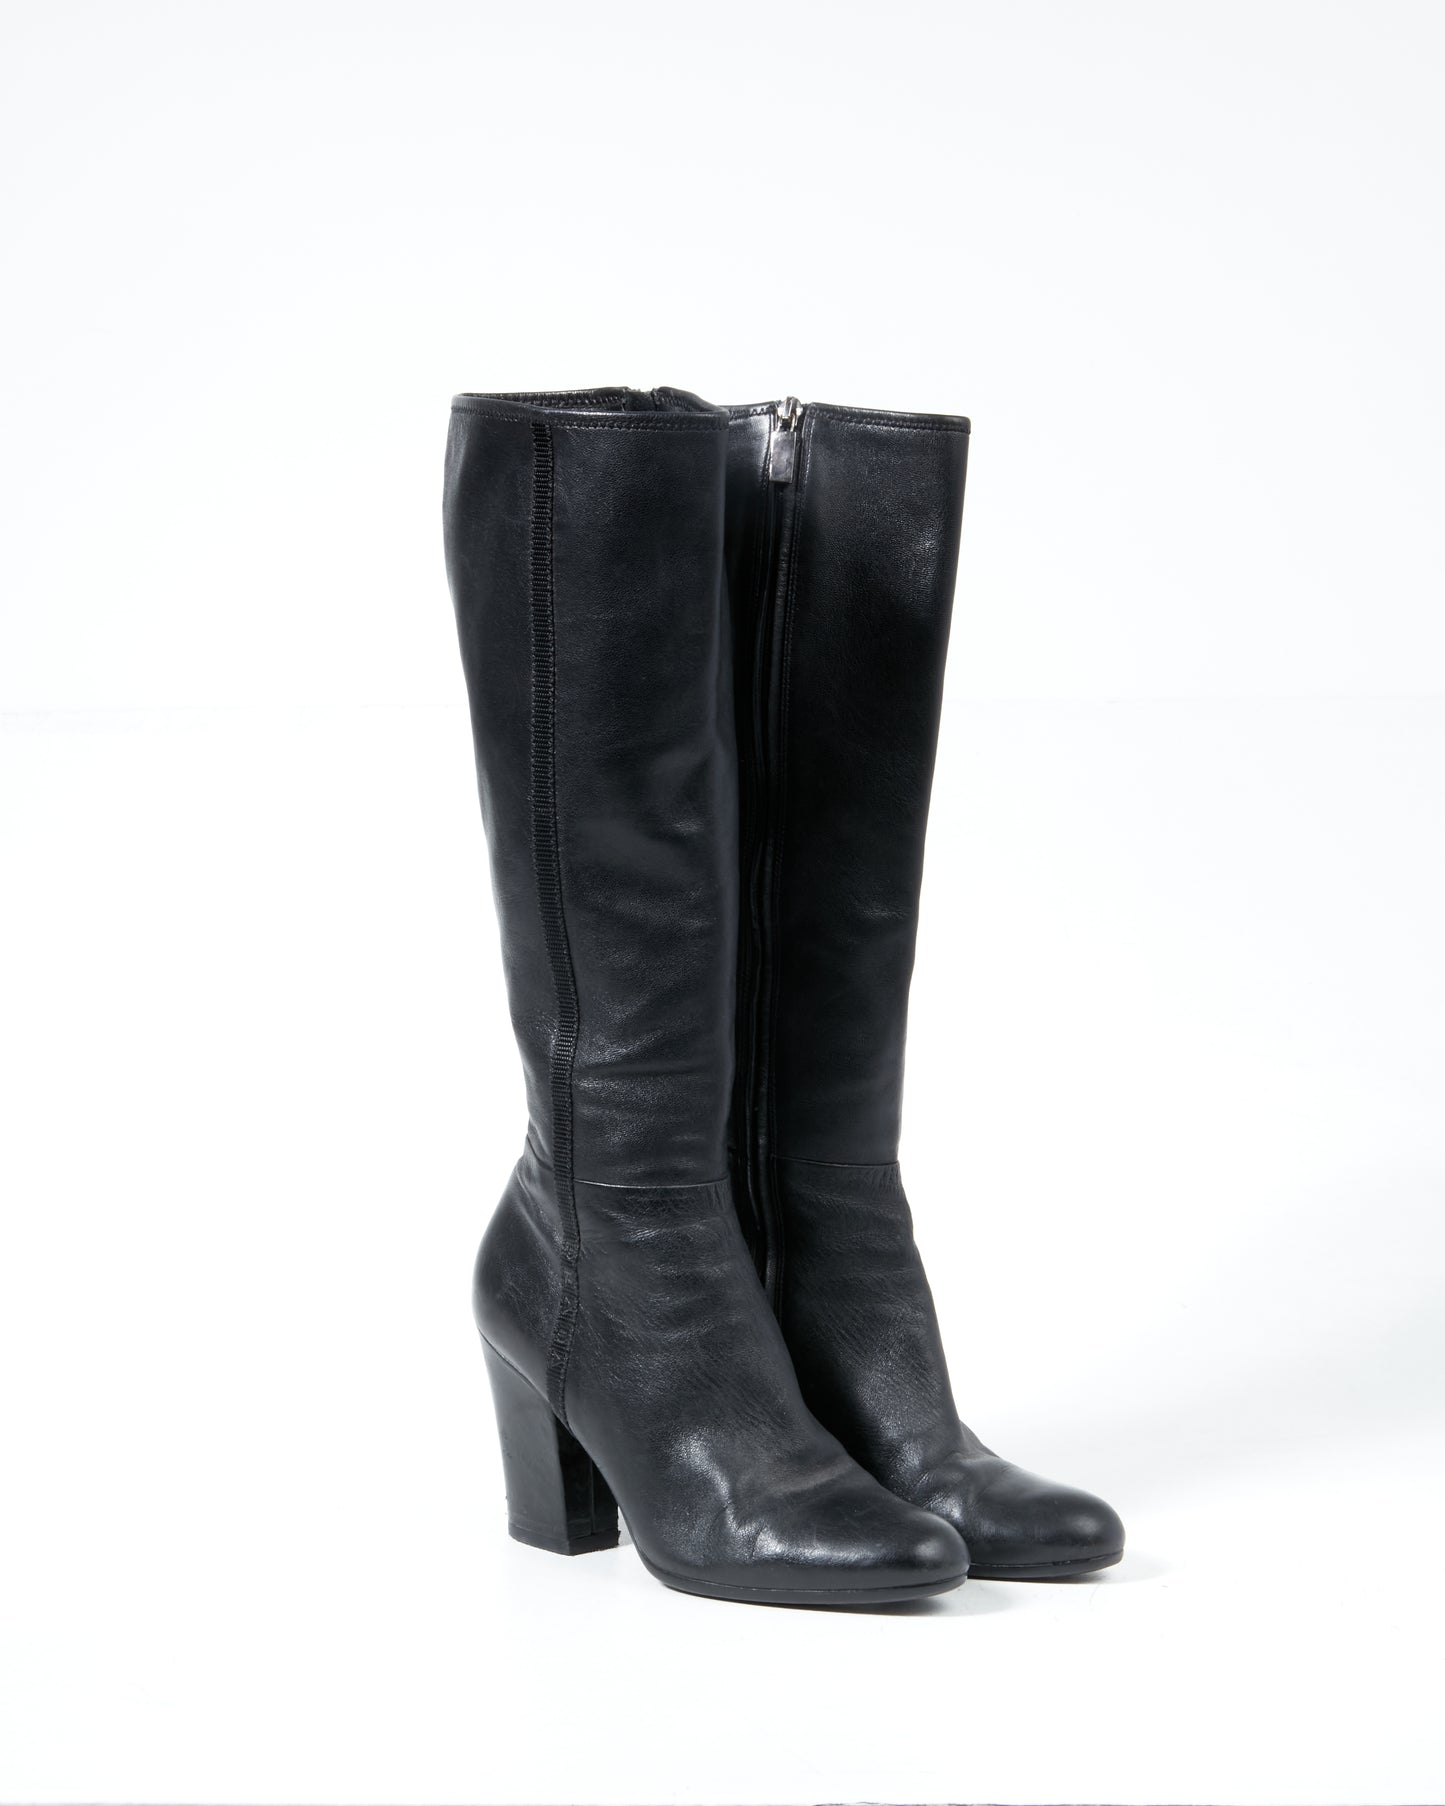 Prada Black Leather Below the Knee Heel Boots - 38.5